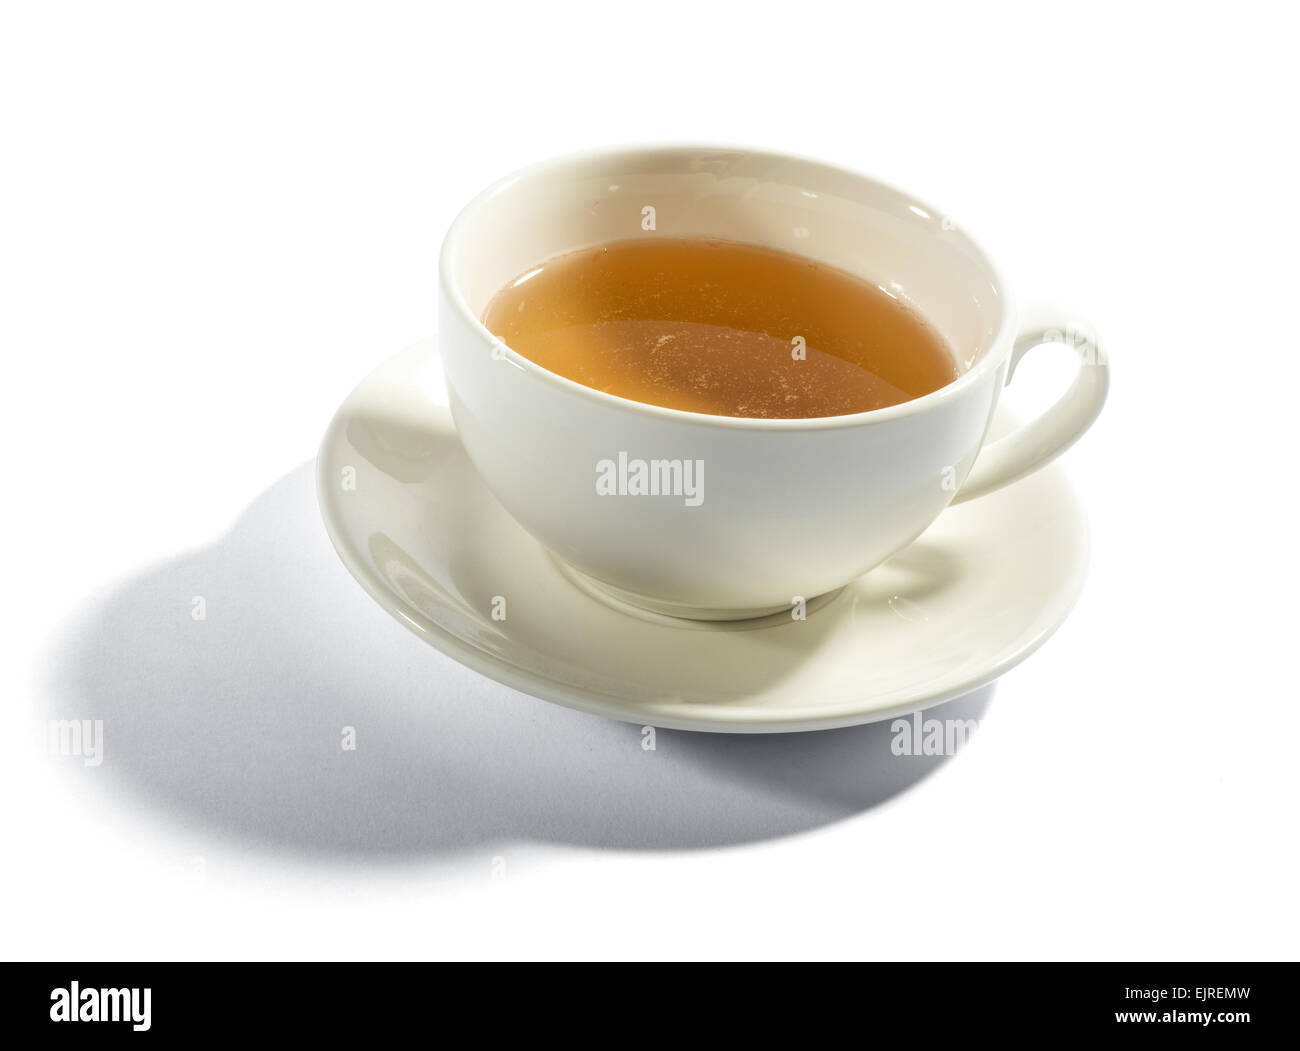 Tasse de thé dans une tasse de porcelaine blanche, high angle view de la boisson sur un fond blanc Banque D'Images